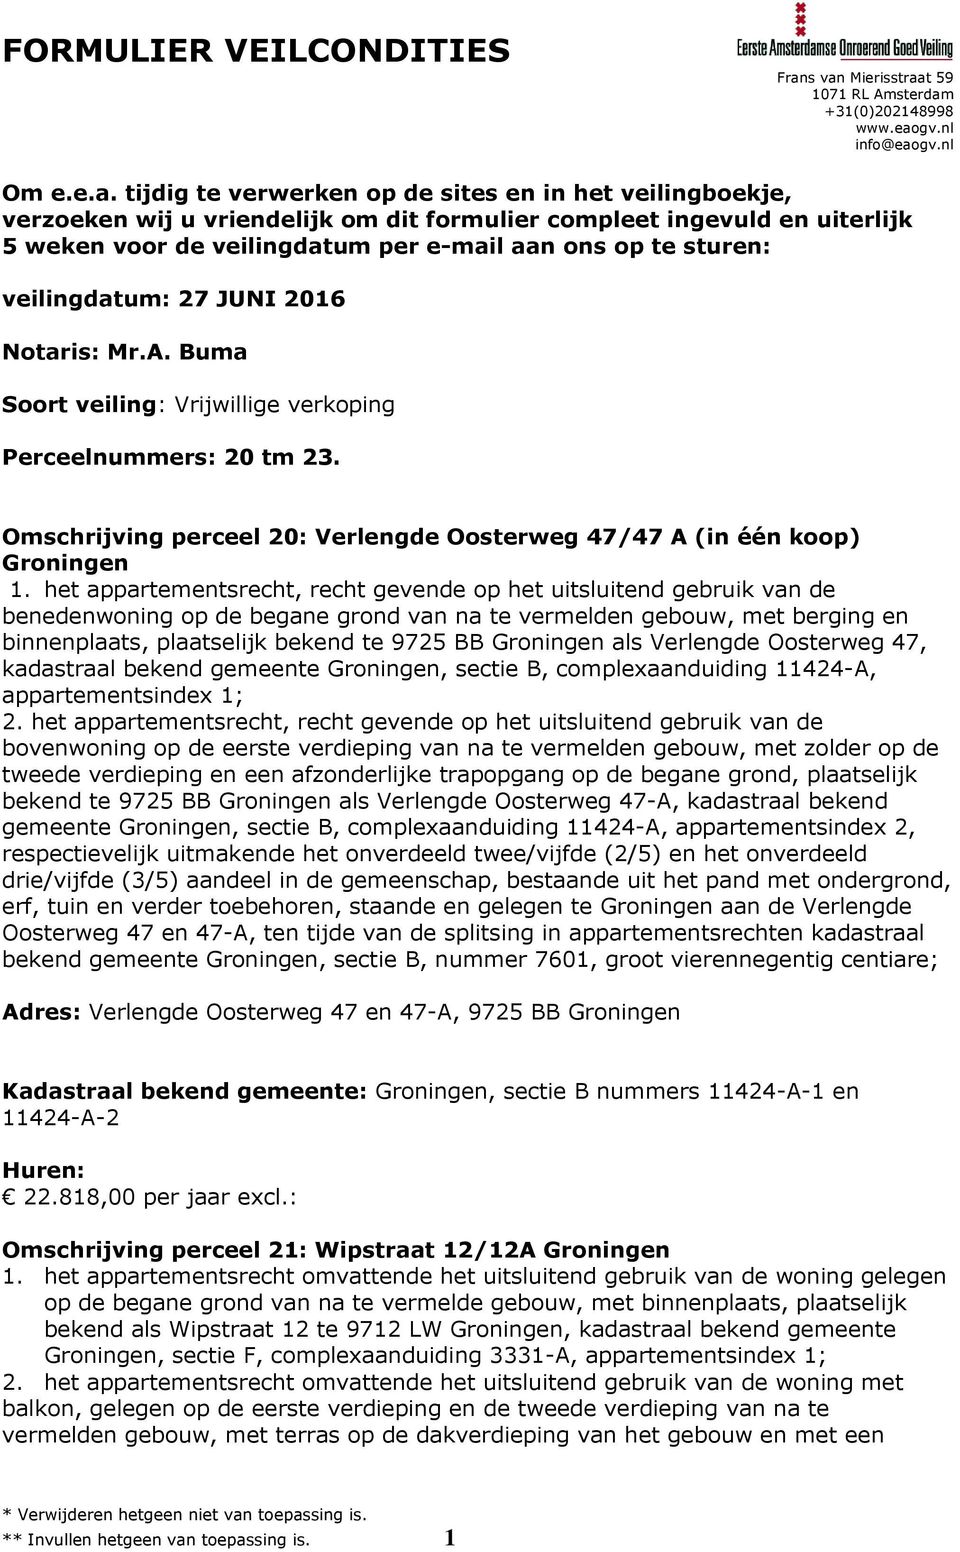 veilingdatum: 27 JUNI 2016 Notaris: Mr.A. Buma Soort veiling: Vrijwillige verkoping Perceelnummers: 20 tm 23. Omschrijving perceel 20: Verlengde Oosterweg 47/47 A (in één koop) Groningen 1.